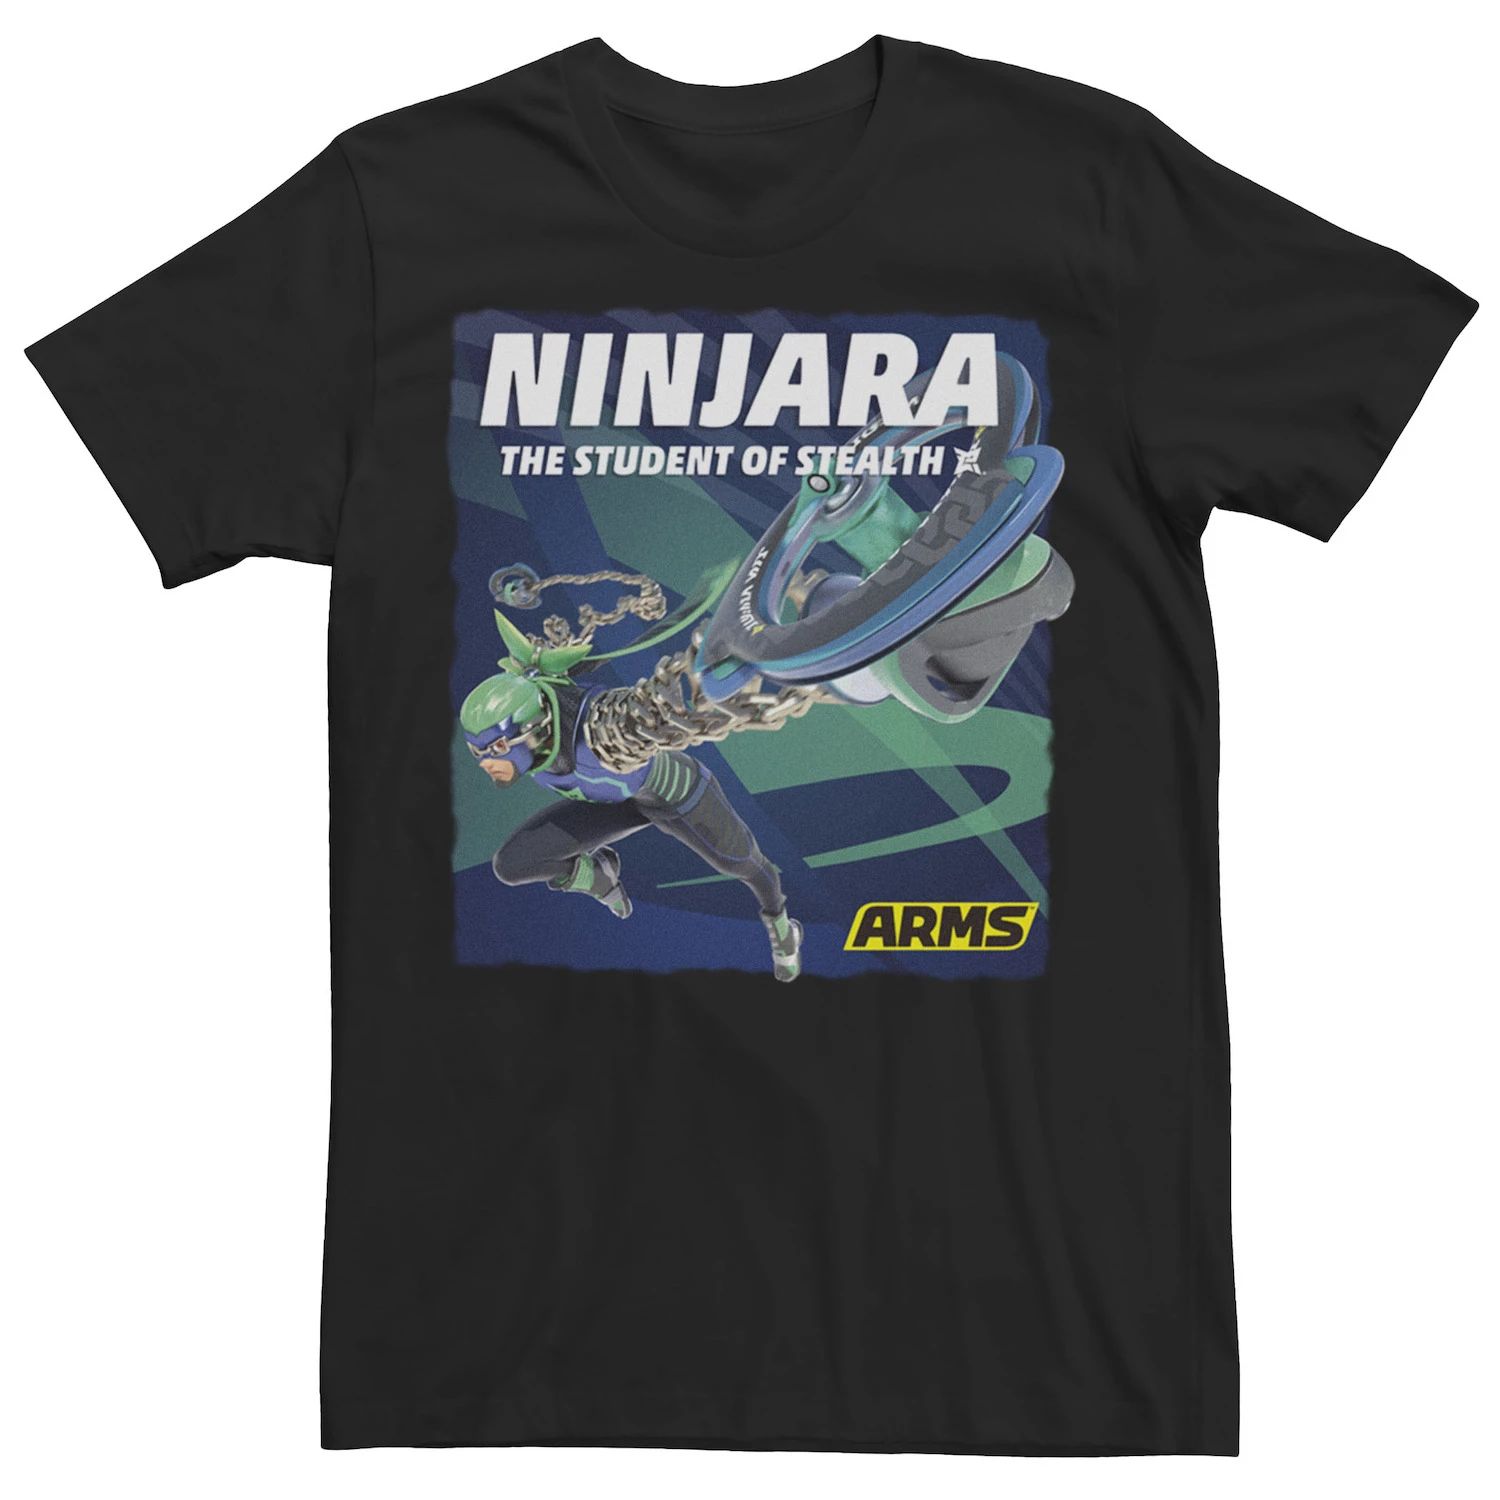 

Мужская футболка с изображением плаката Ninjara The Student Of Stealth Licensed Character